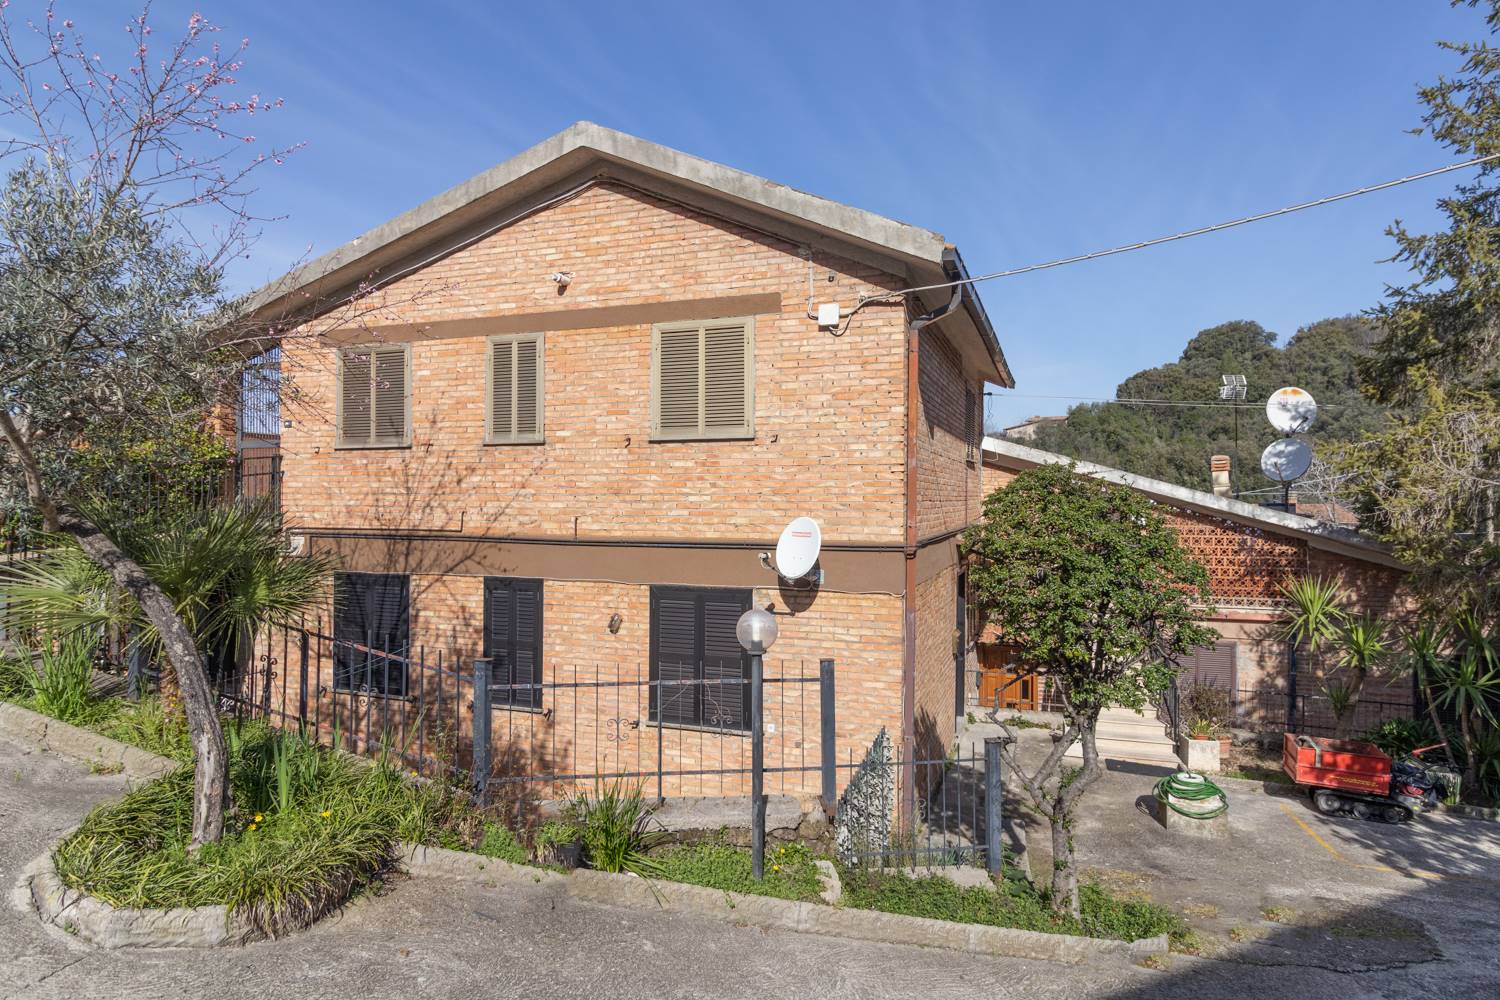 Appartamento in vendita a Poggio Catino, 3 locali, prezzo € 48.000 | PortaleAgenzieImmobiliari.it